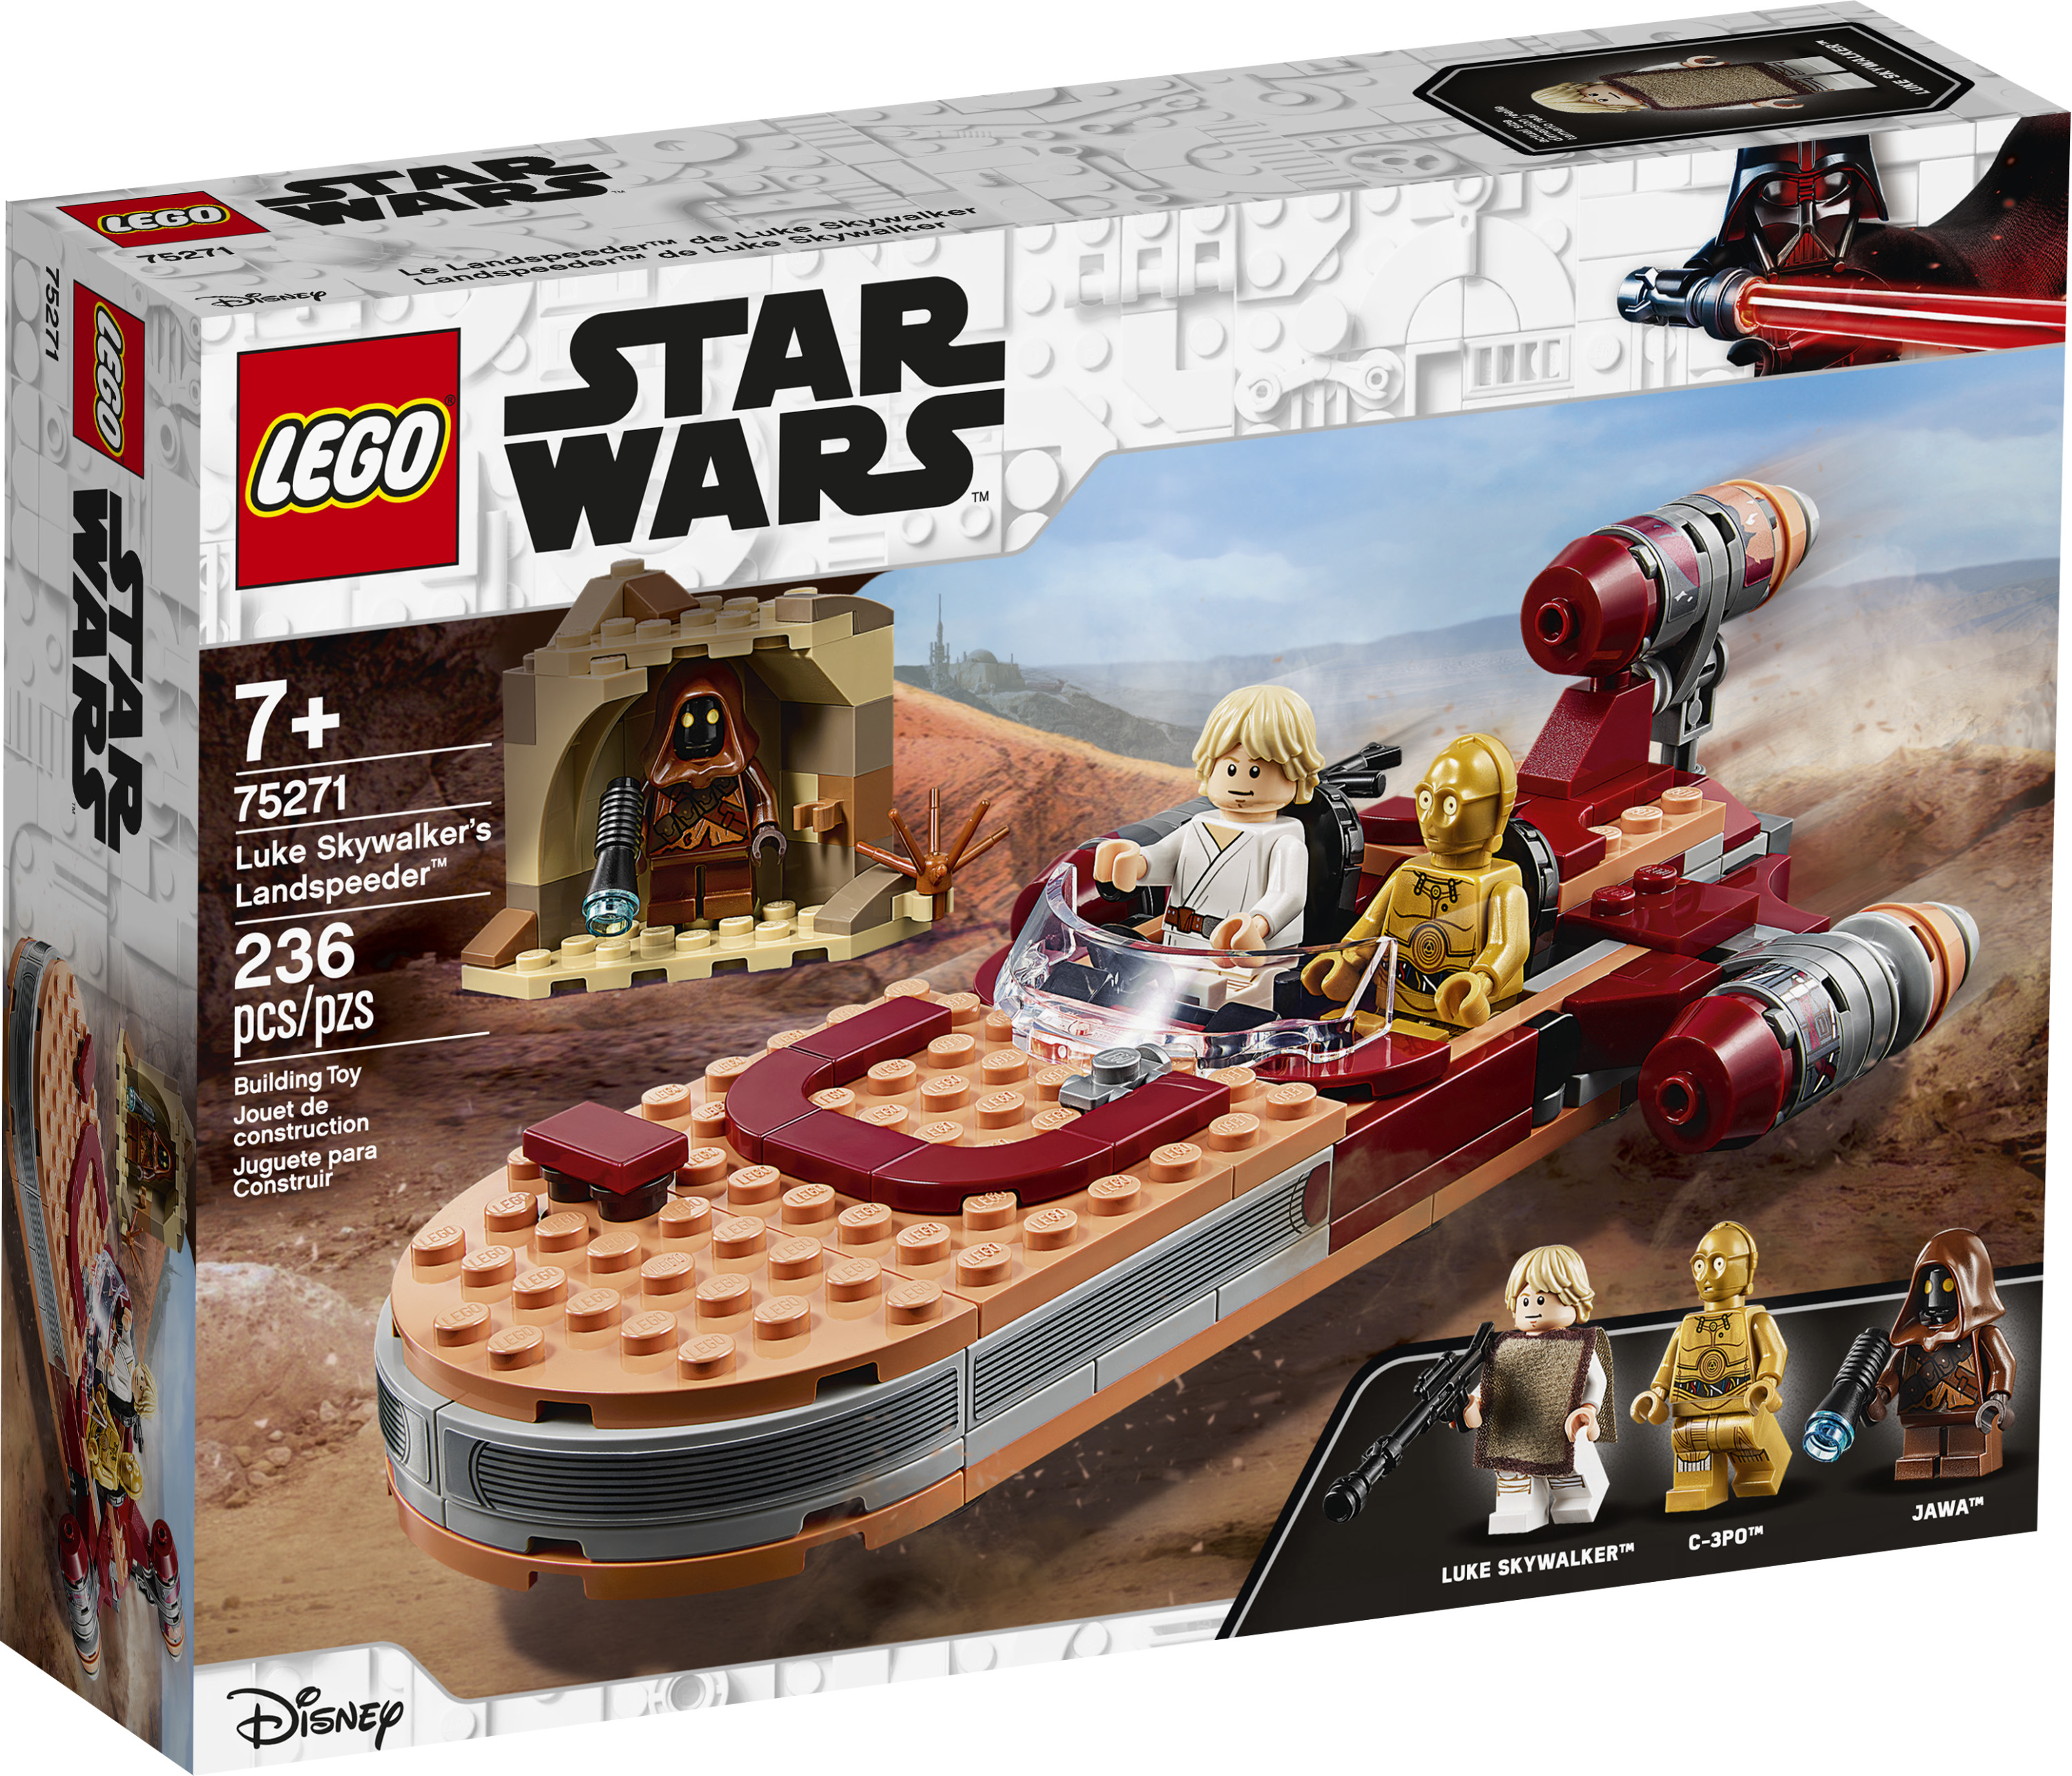 LEGO Star Wars: A New Hope Luke Skywalker’s Landspeeder 75271 Building Kit, Collectible Set (236 Pieces) - image 4 of 5